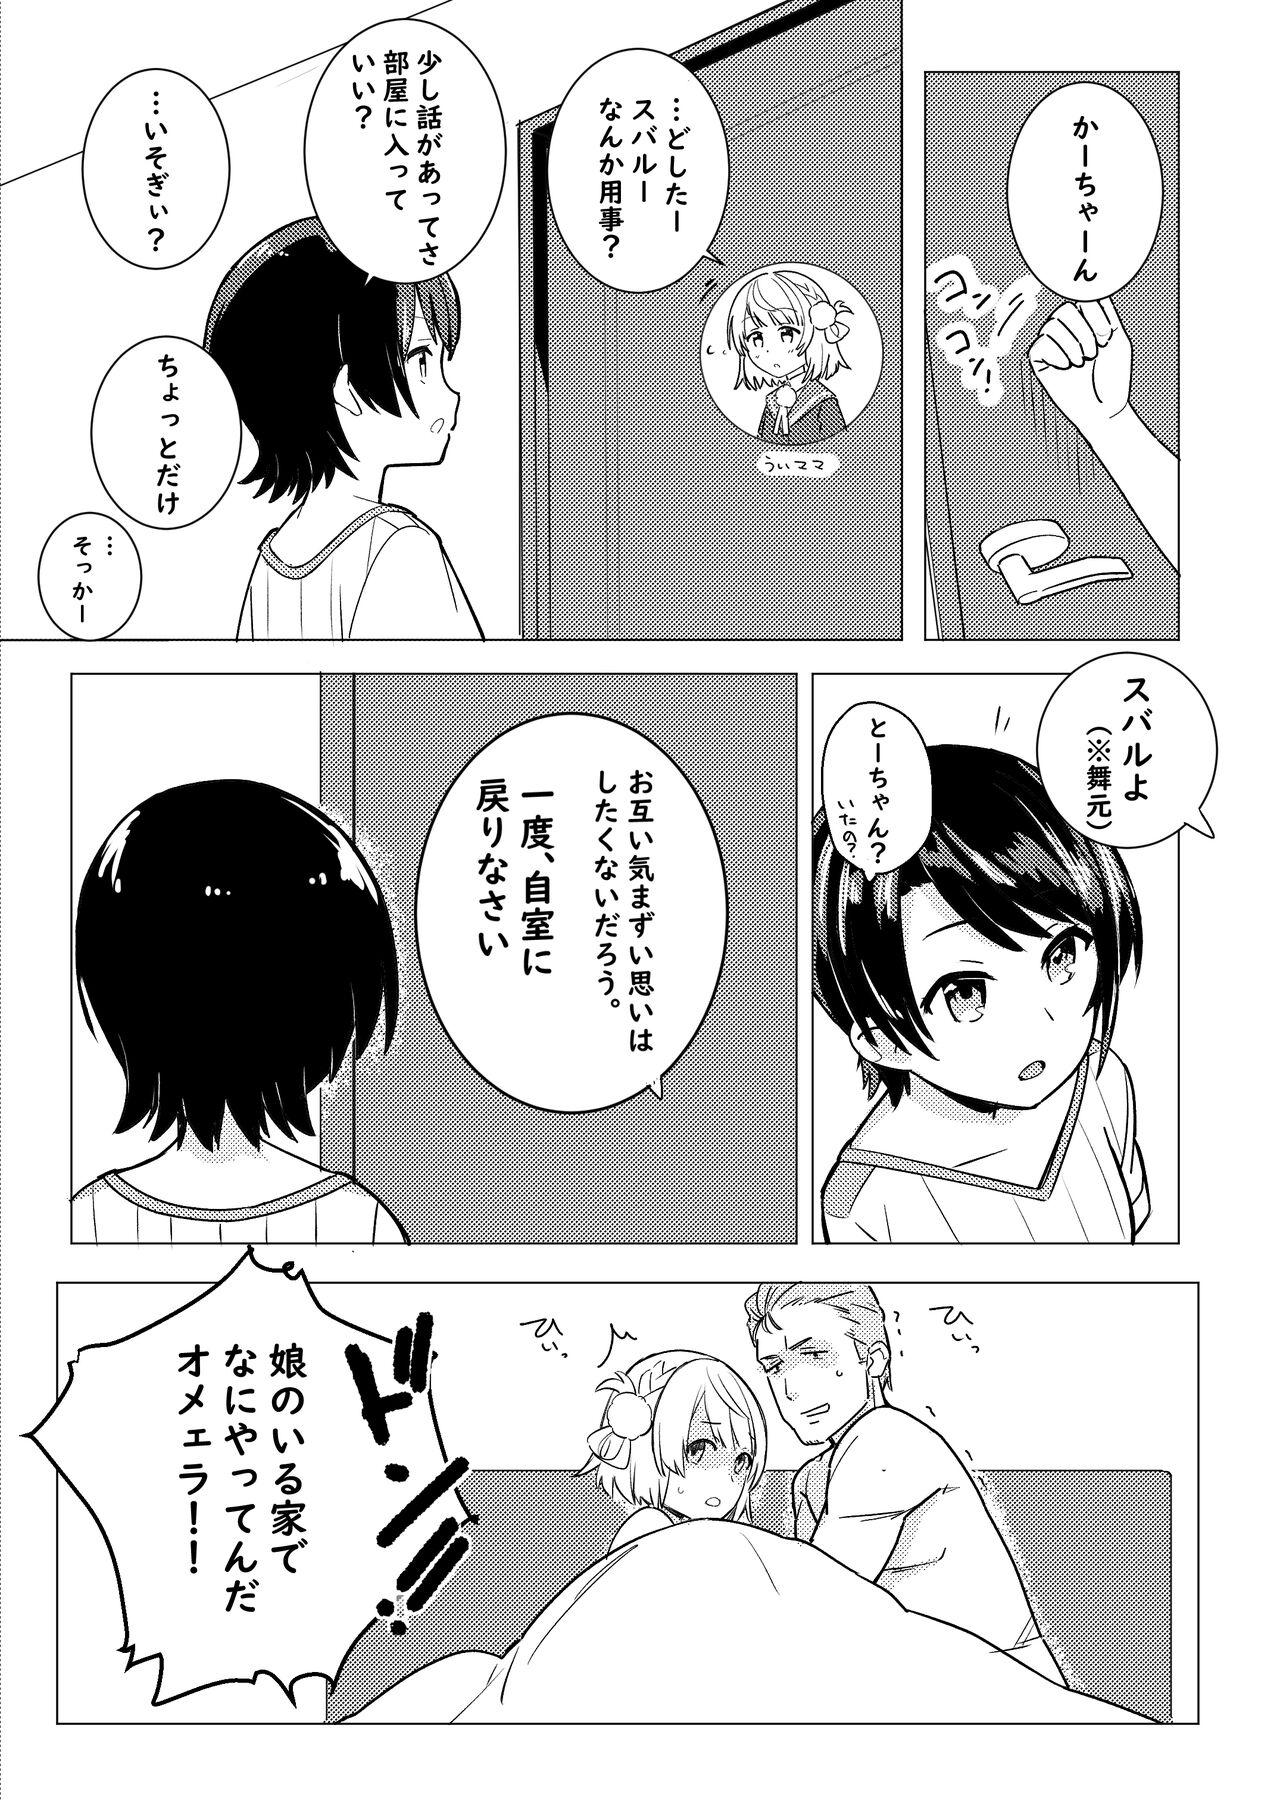 Twitter Short Manga 4